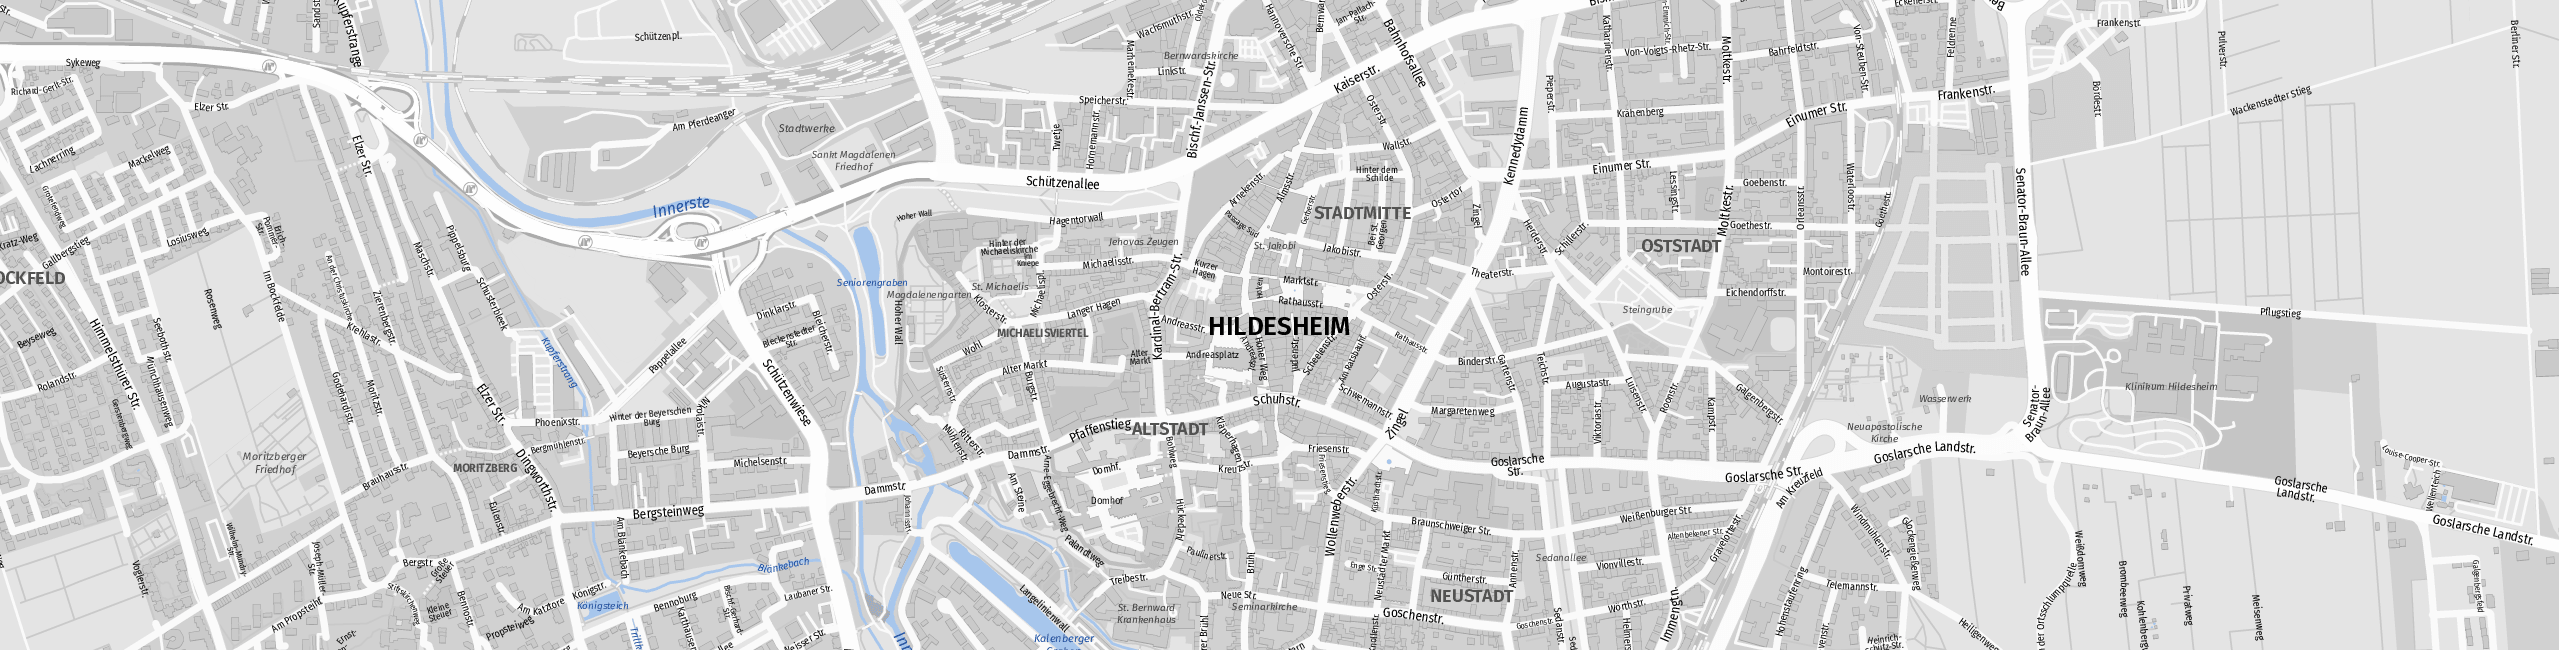 Stadtplan Hildesheim zum Downloaden.